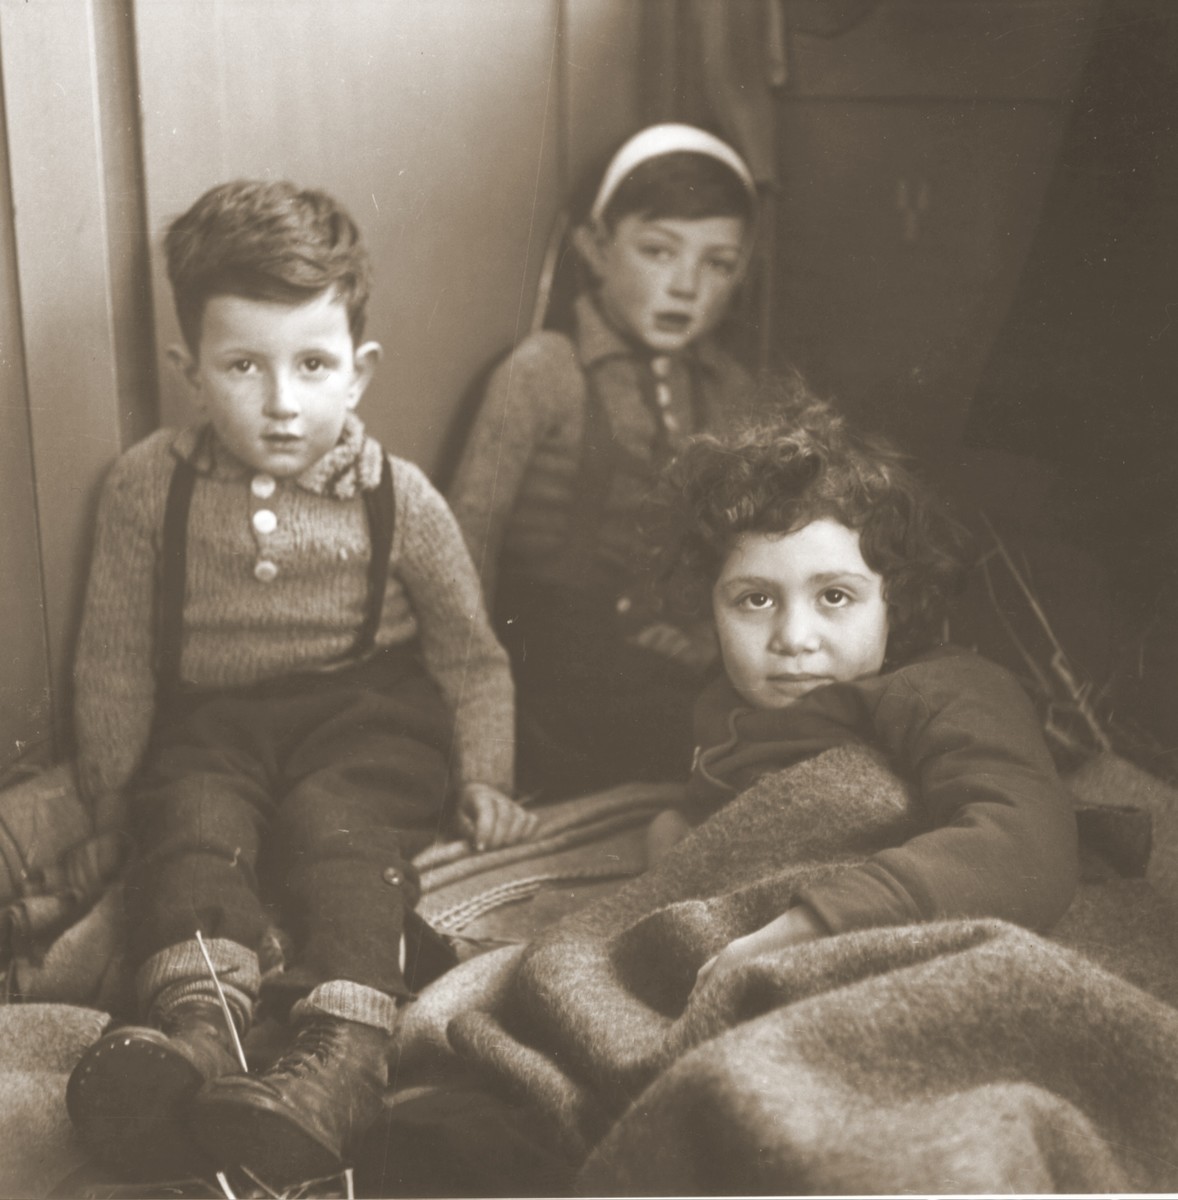 Three Jewish children rescued from Theresienstadt  rest in the Hadwigschulhaus in St. Gallen.